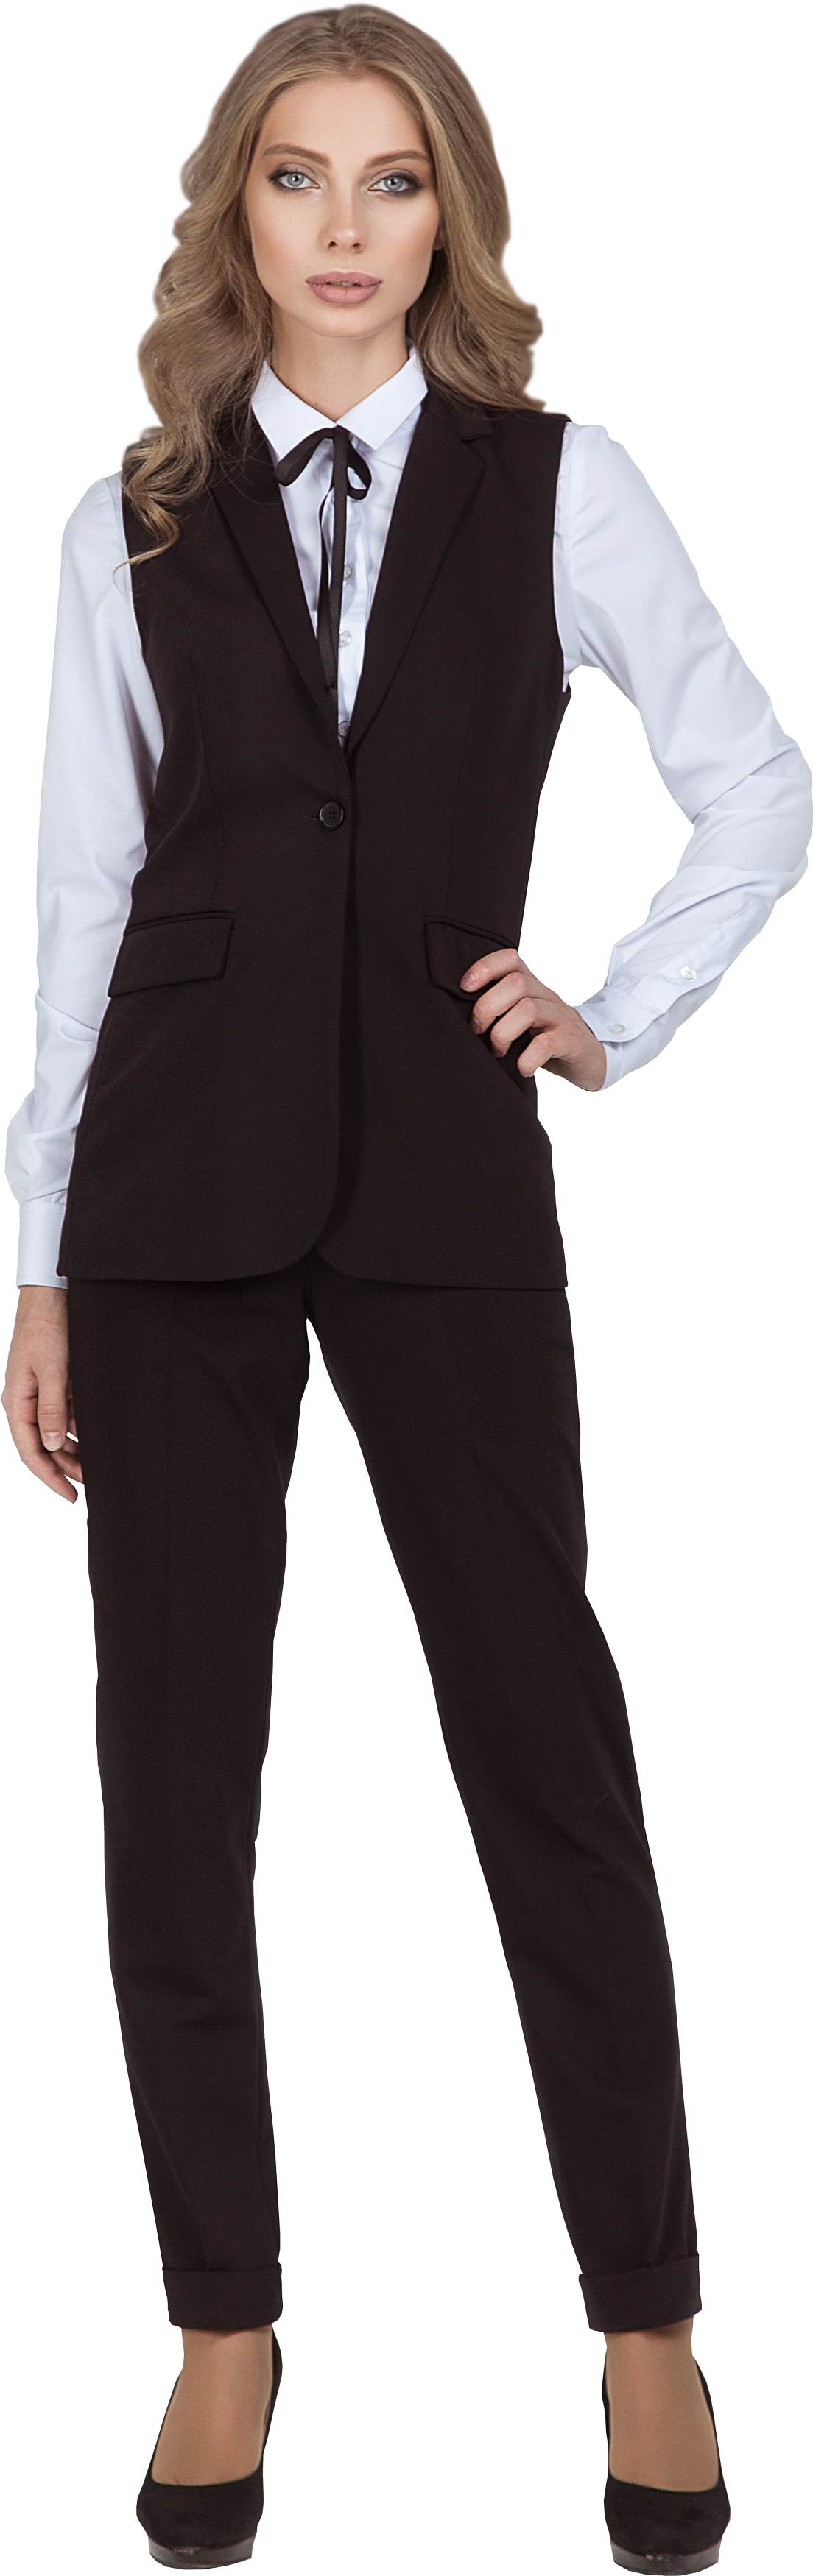 Комплект для администратора VISHERA - удлиненная жилетка / брюки, женский. 